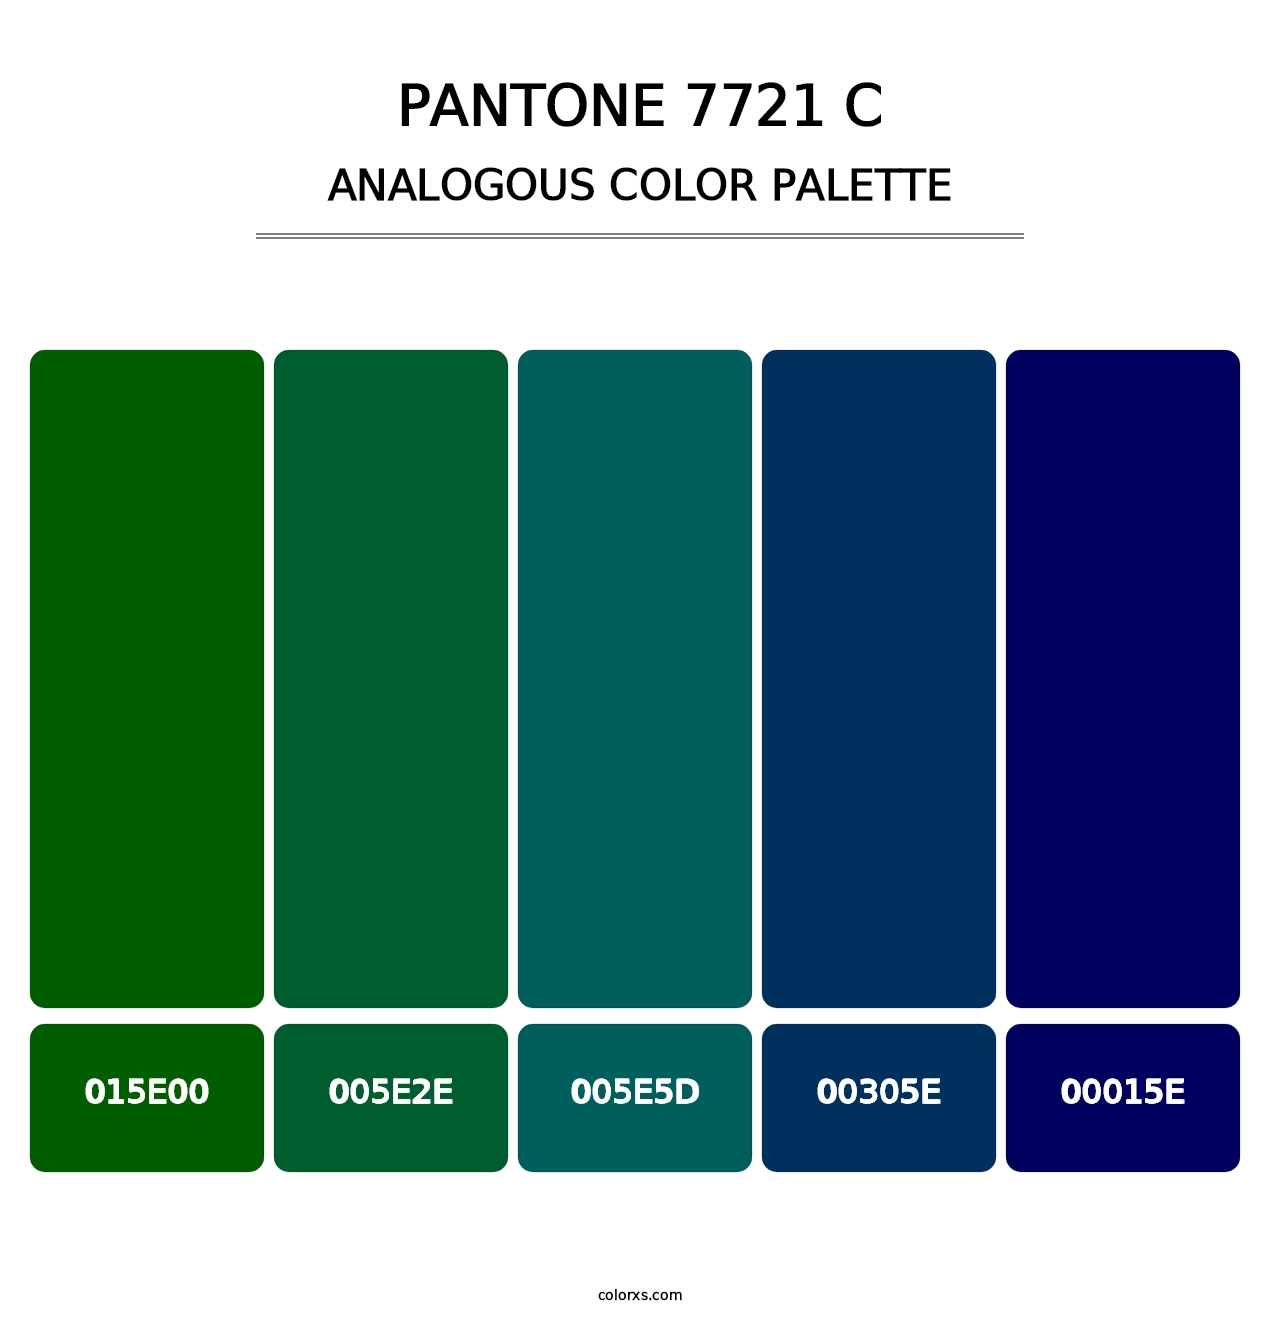 PANTONE 7721 C - Analogous Color Palette